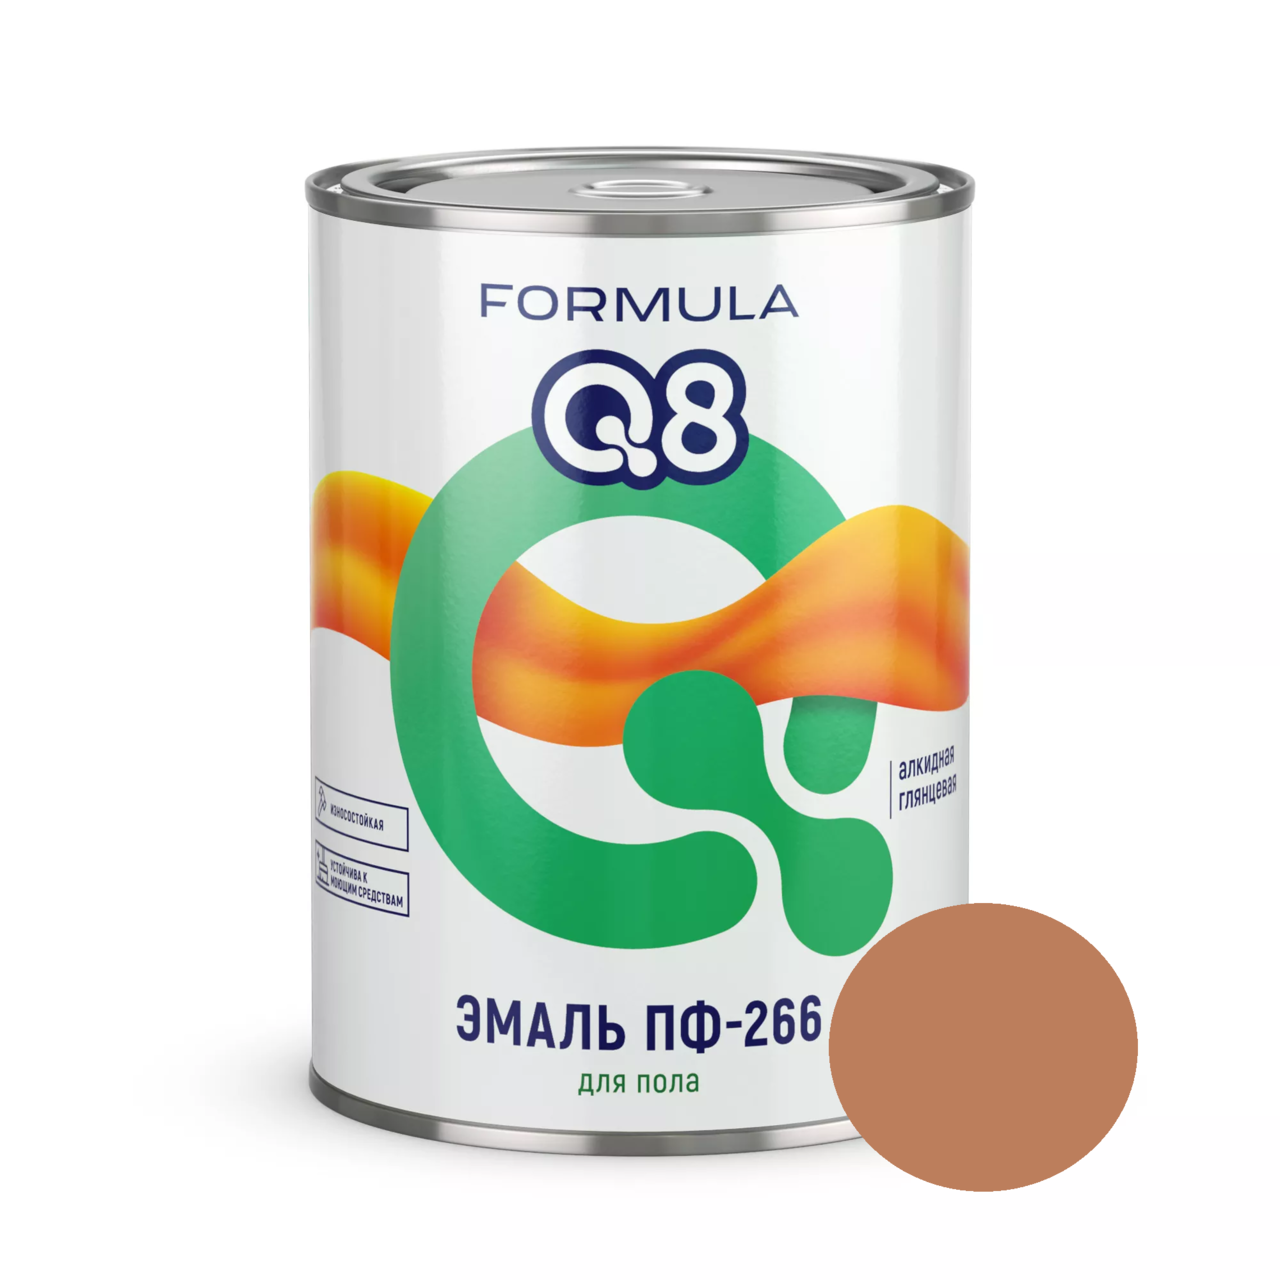 Эмаль ПФ-266 Formula Q8 золотисто-коричневая 0,9 кг